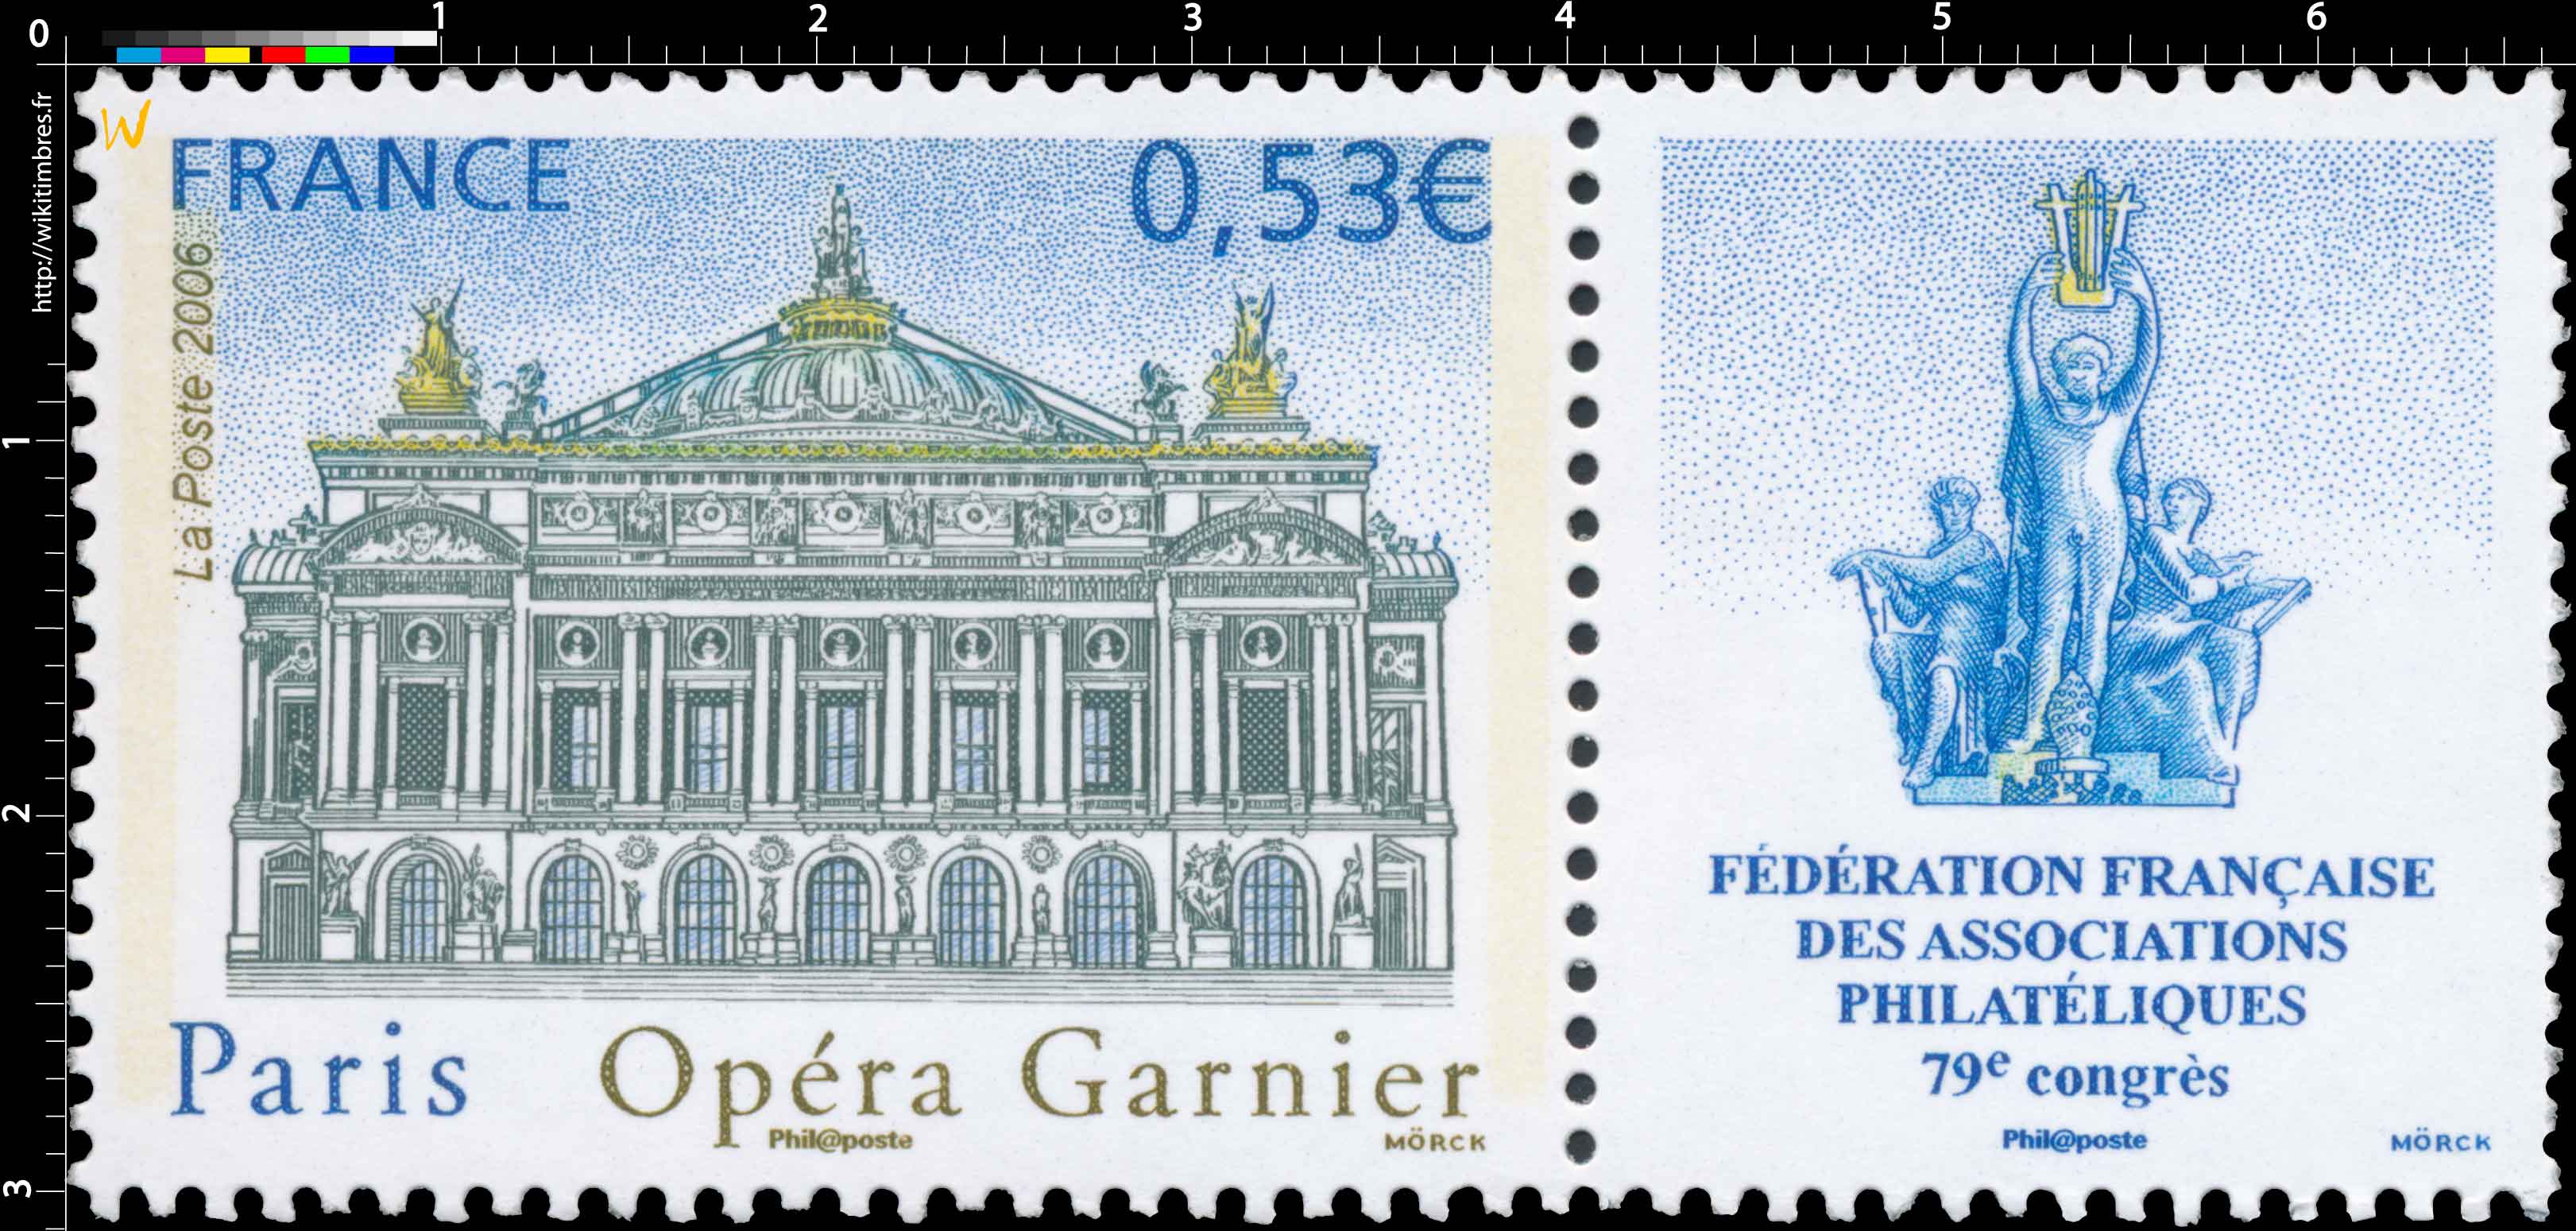 2006 Paris Opéra Garnier FÉDÉRATIONS FRANCAISE DES ASSOCIATIONS PHILATÉLIQUES 79E CONGRÈS